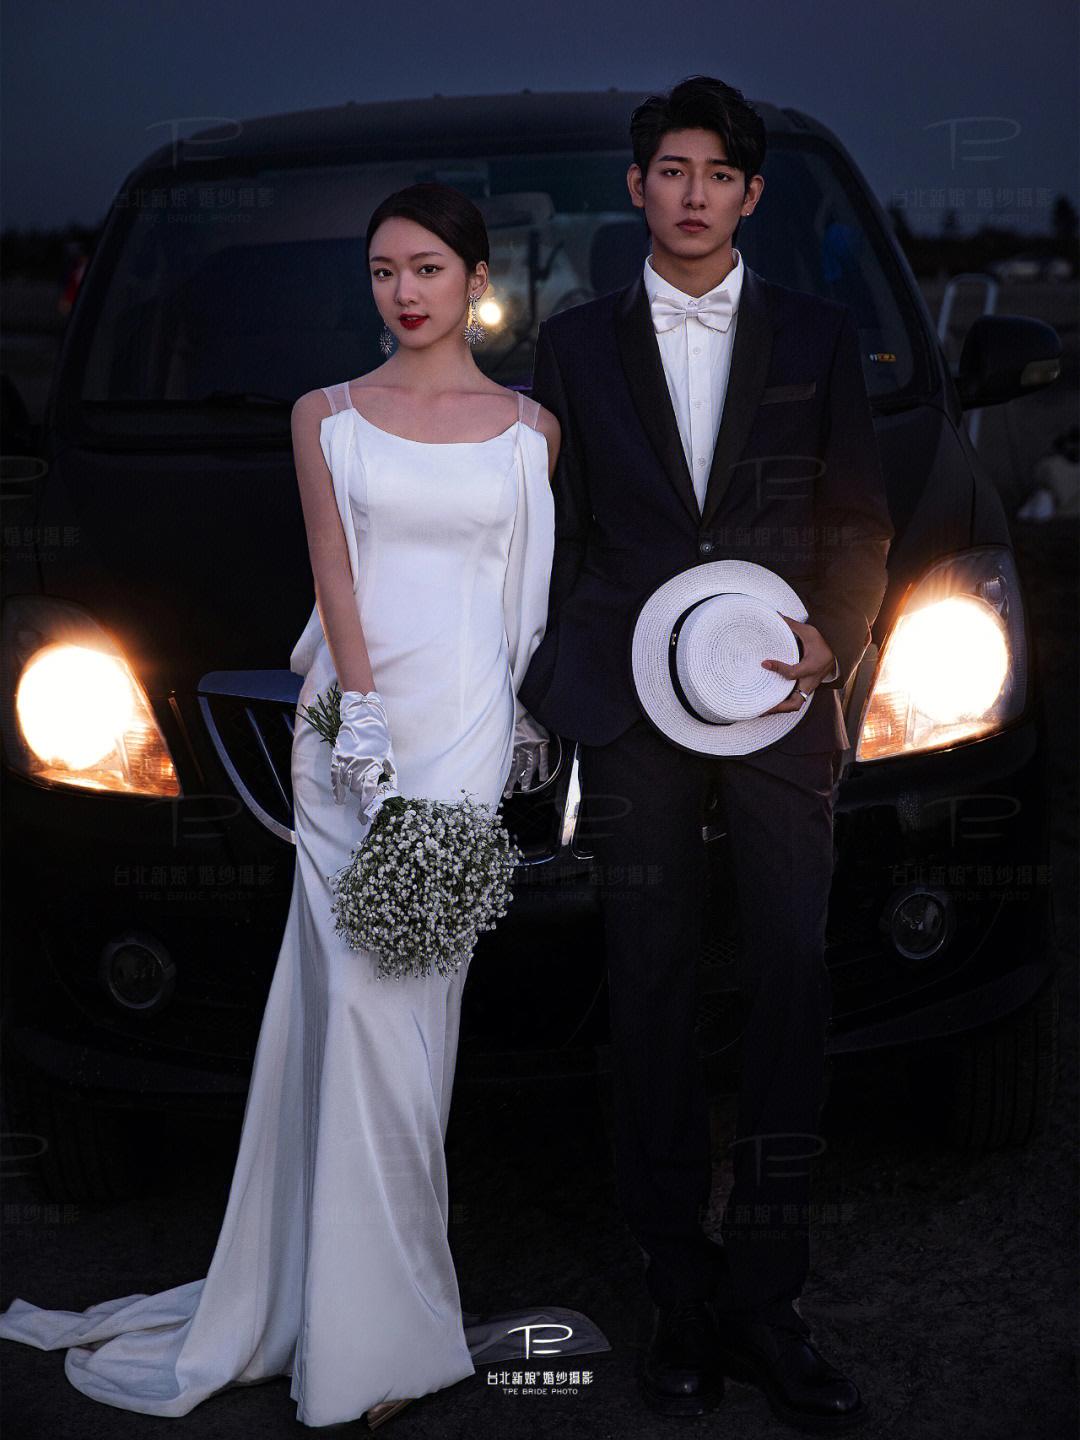 不断创造主创团队:台北新娘导演摄制组身穿婚纱与你一起感受落日在